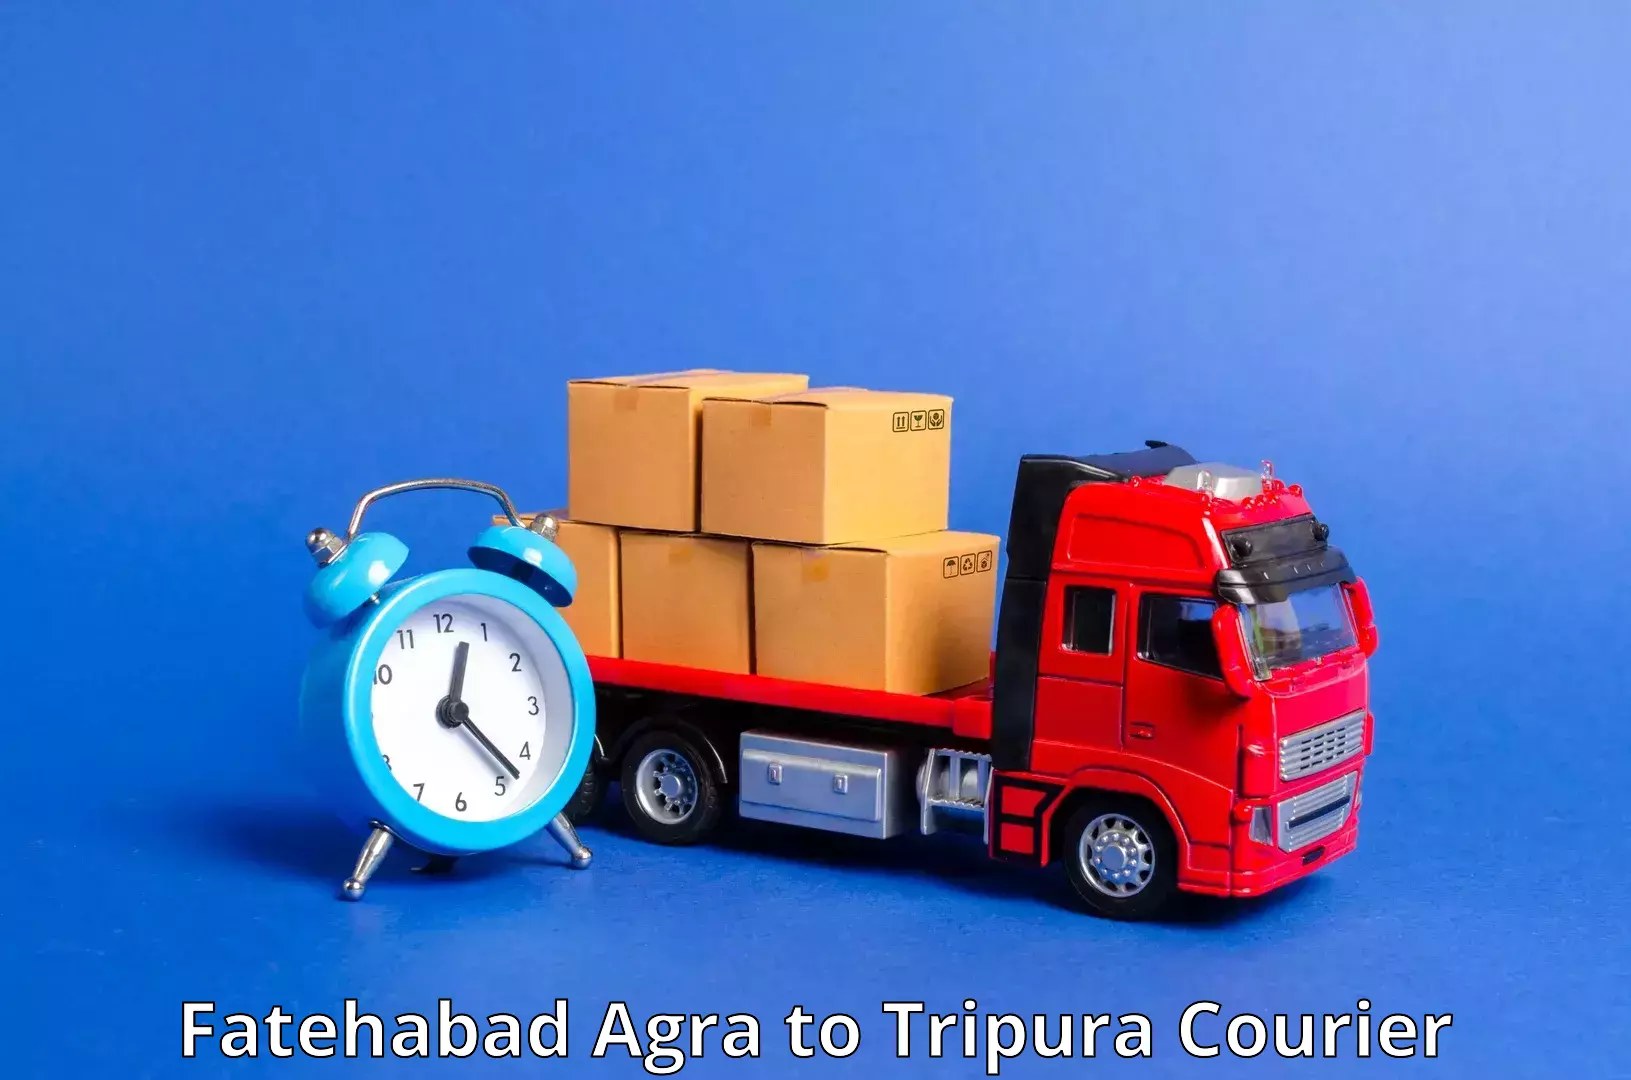 High-efficiency logistics Fatehabad Agra to Manu Bazar